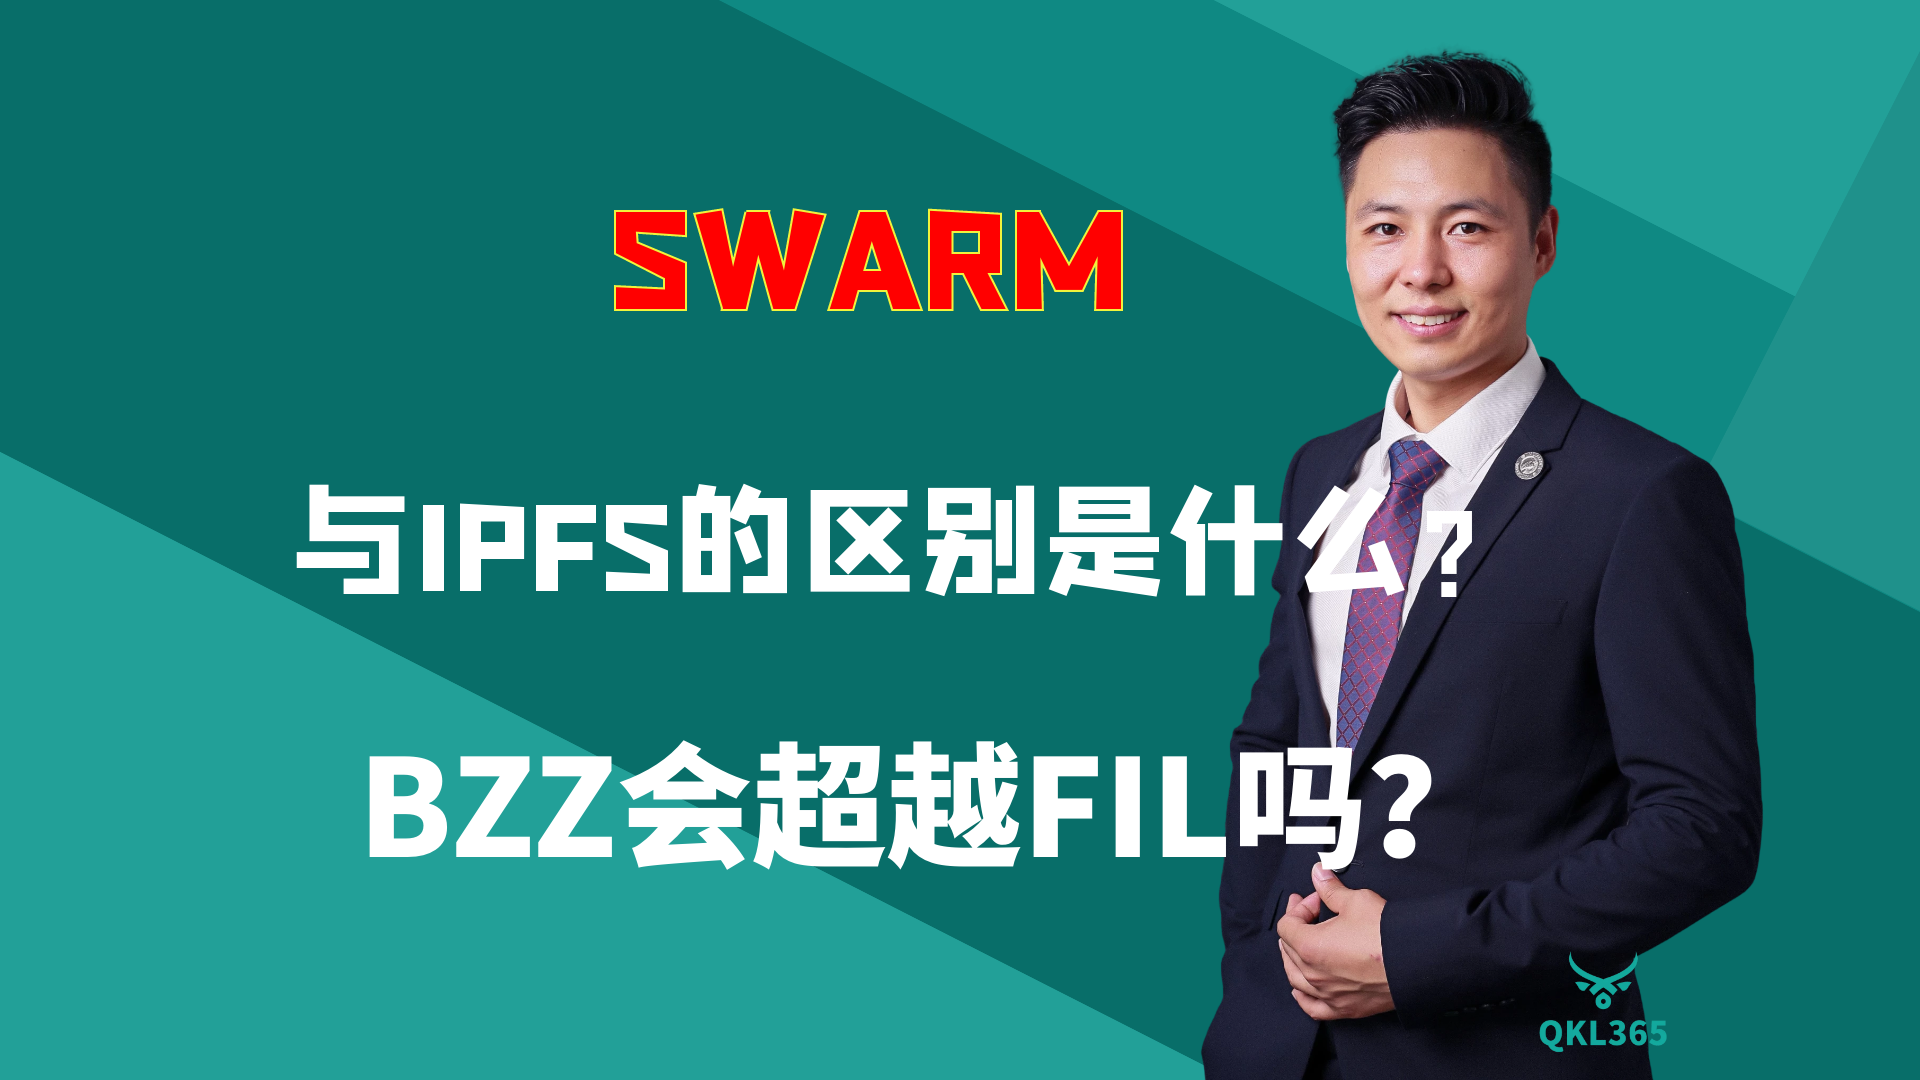 007-SWARM和IPFS的区别是什么？BZZ会超越FIL吗？